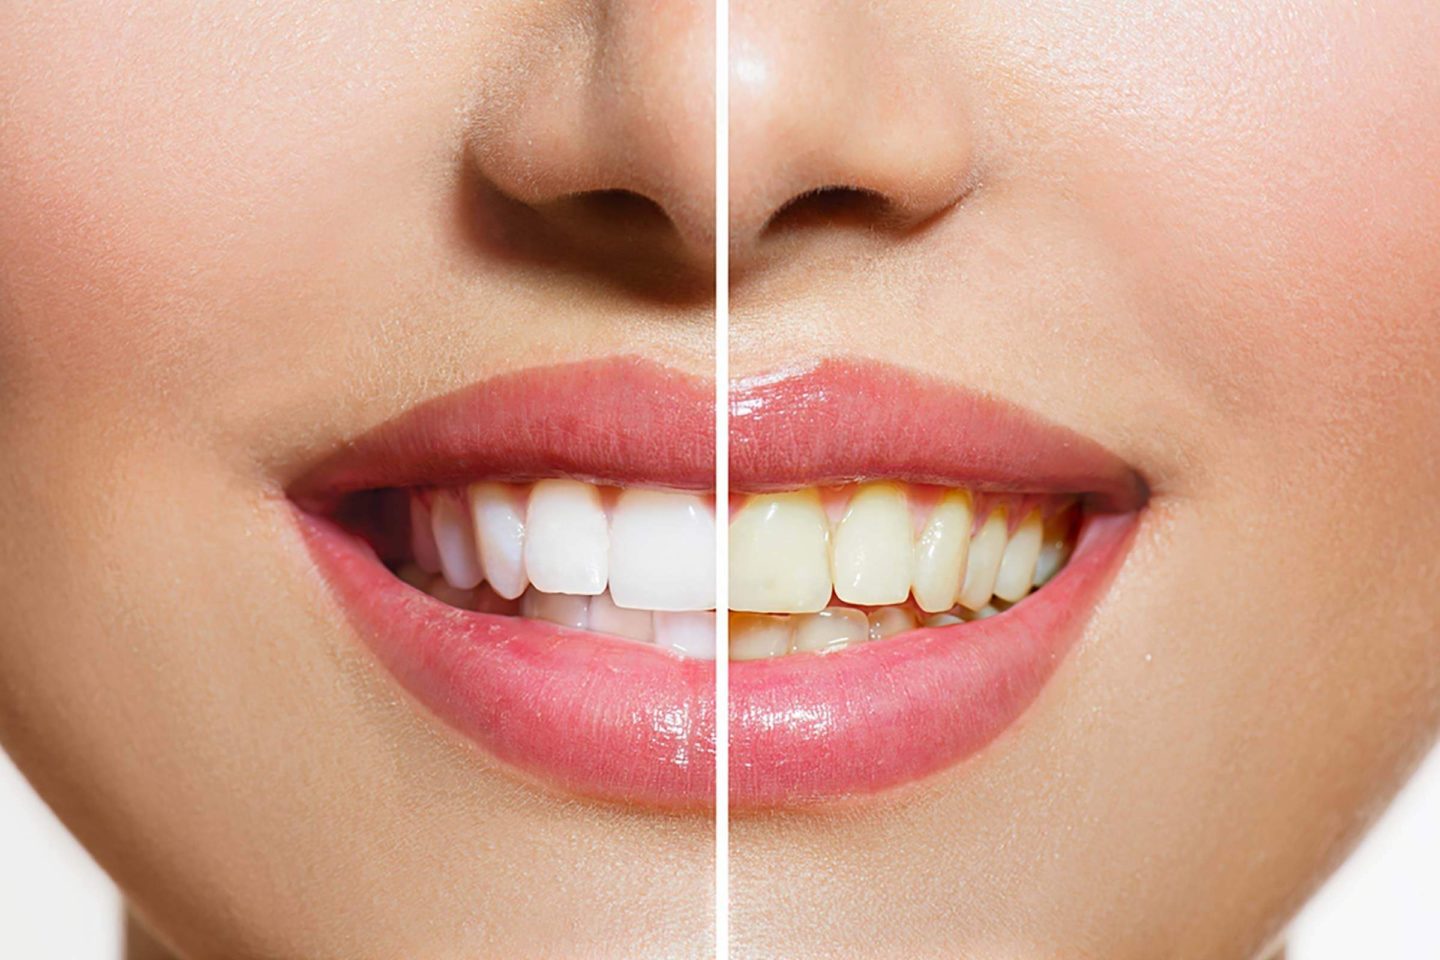 ھل الأسنان الصفراء طبیعیة أم علامة على سوء الحالة الصحیة؟